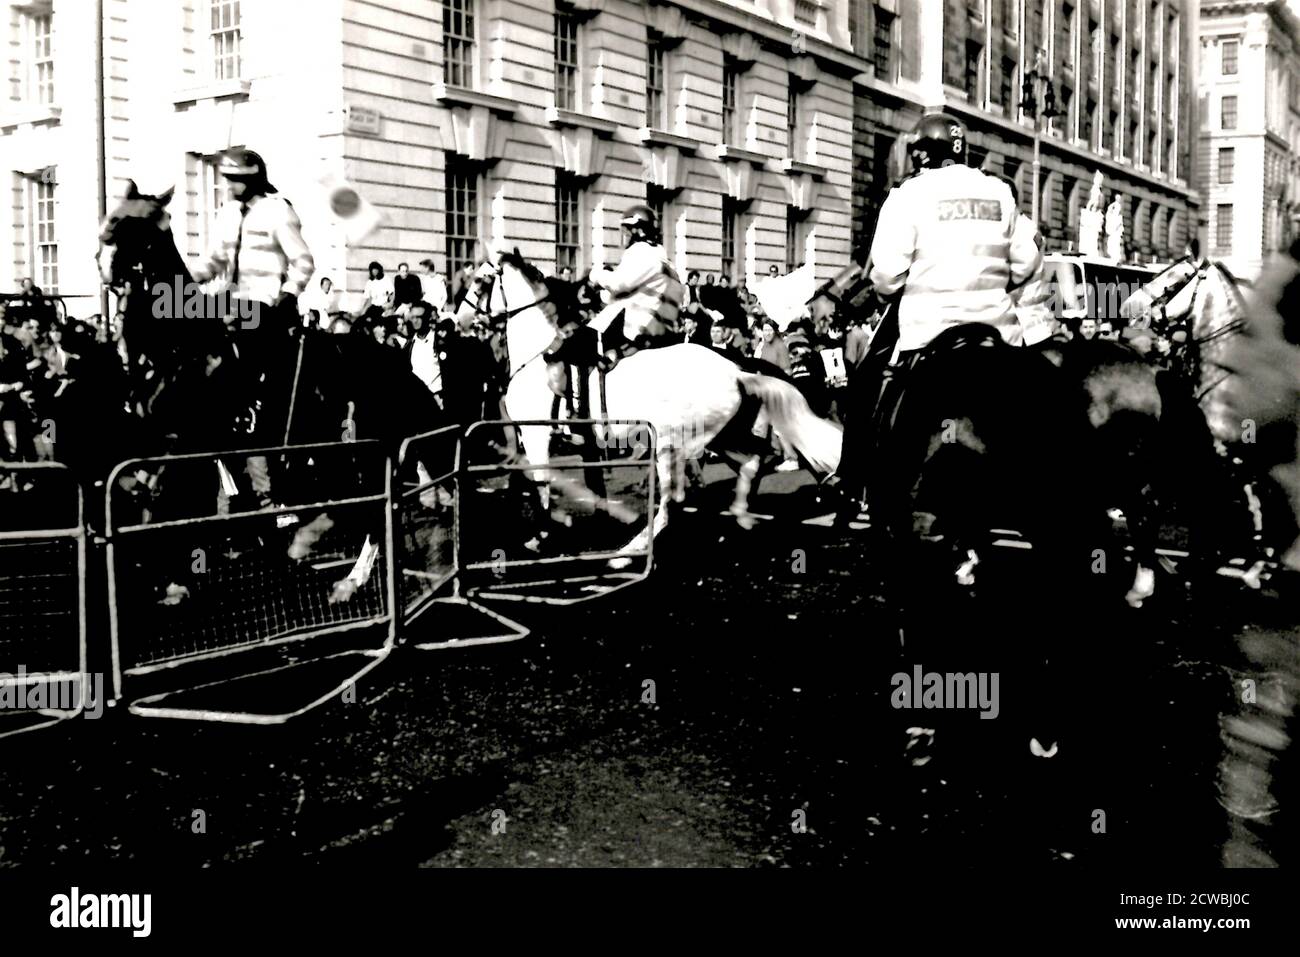 Fotos, die während der Umfragesteuerunruhen aufgenommen wurden. Die Poll Tax Riots waren eine Reihe von Unruhen in britischen Städten während der Proteste gegen die von Premierminister Margaret Thatcher eingeführte Gemeinschaftsgebühr (Umfragesteuer). Stockfoto